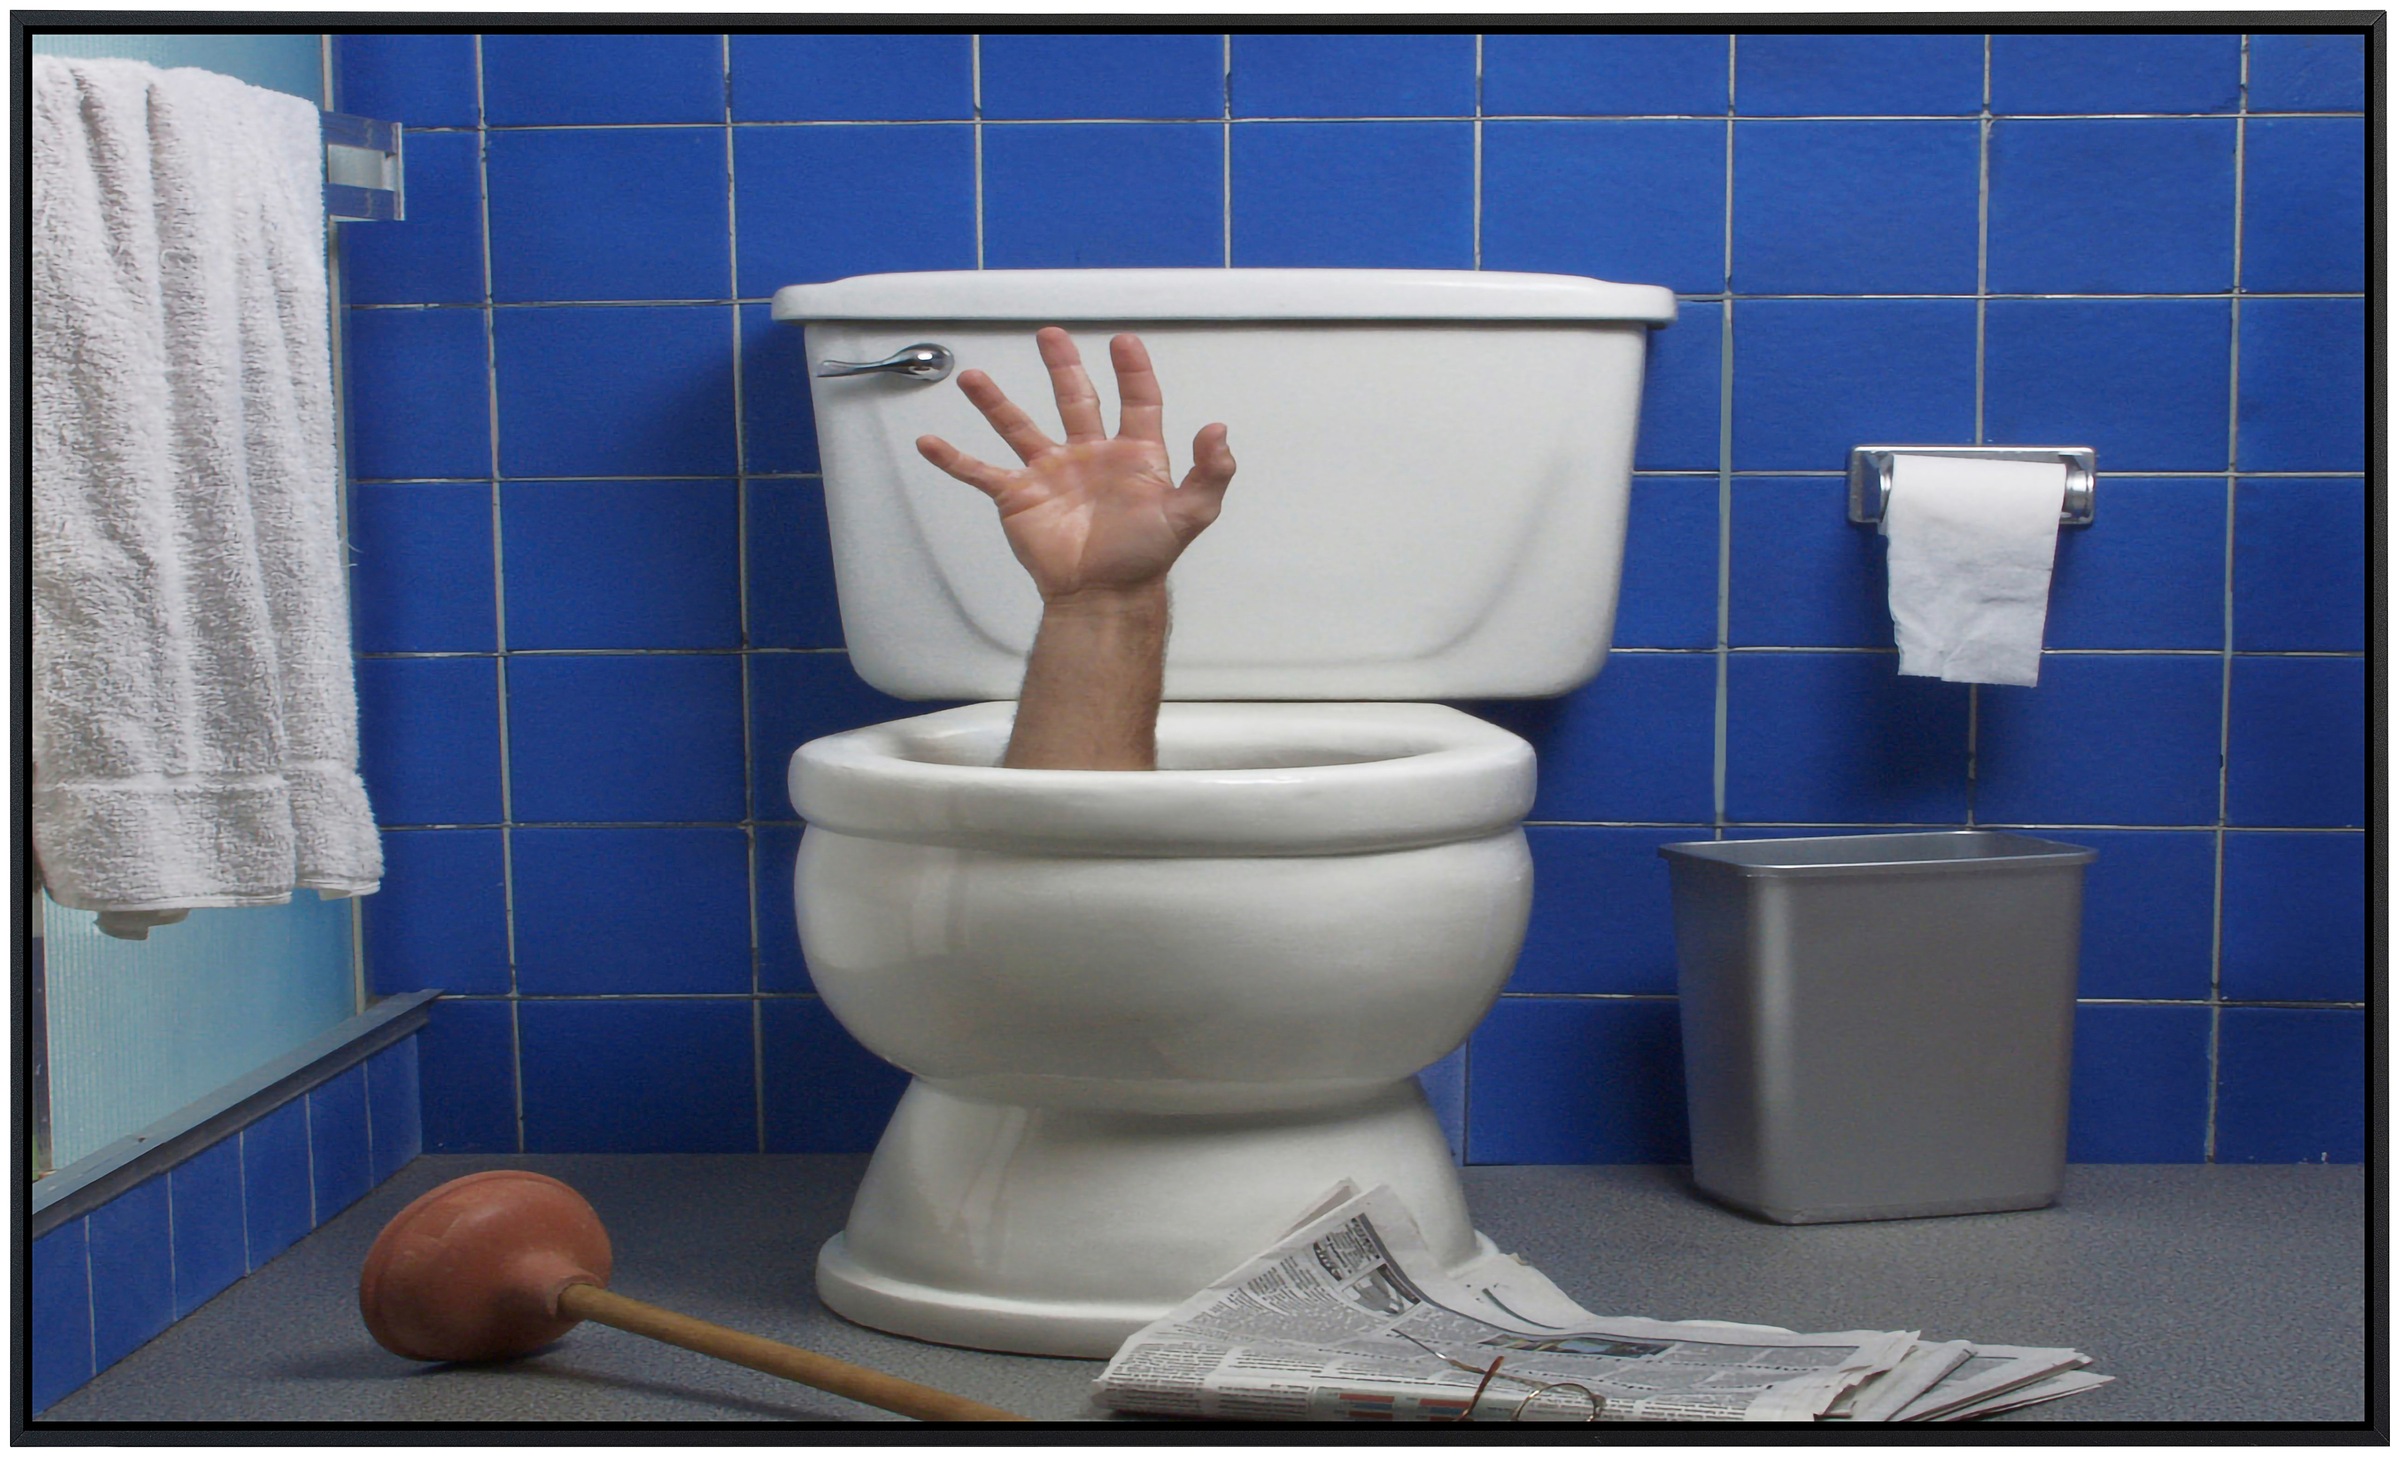 Papermoon Infrarotheizung »Arm in Toilette«, sehr angenehme Strahlungswärme günstig online kaufen